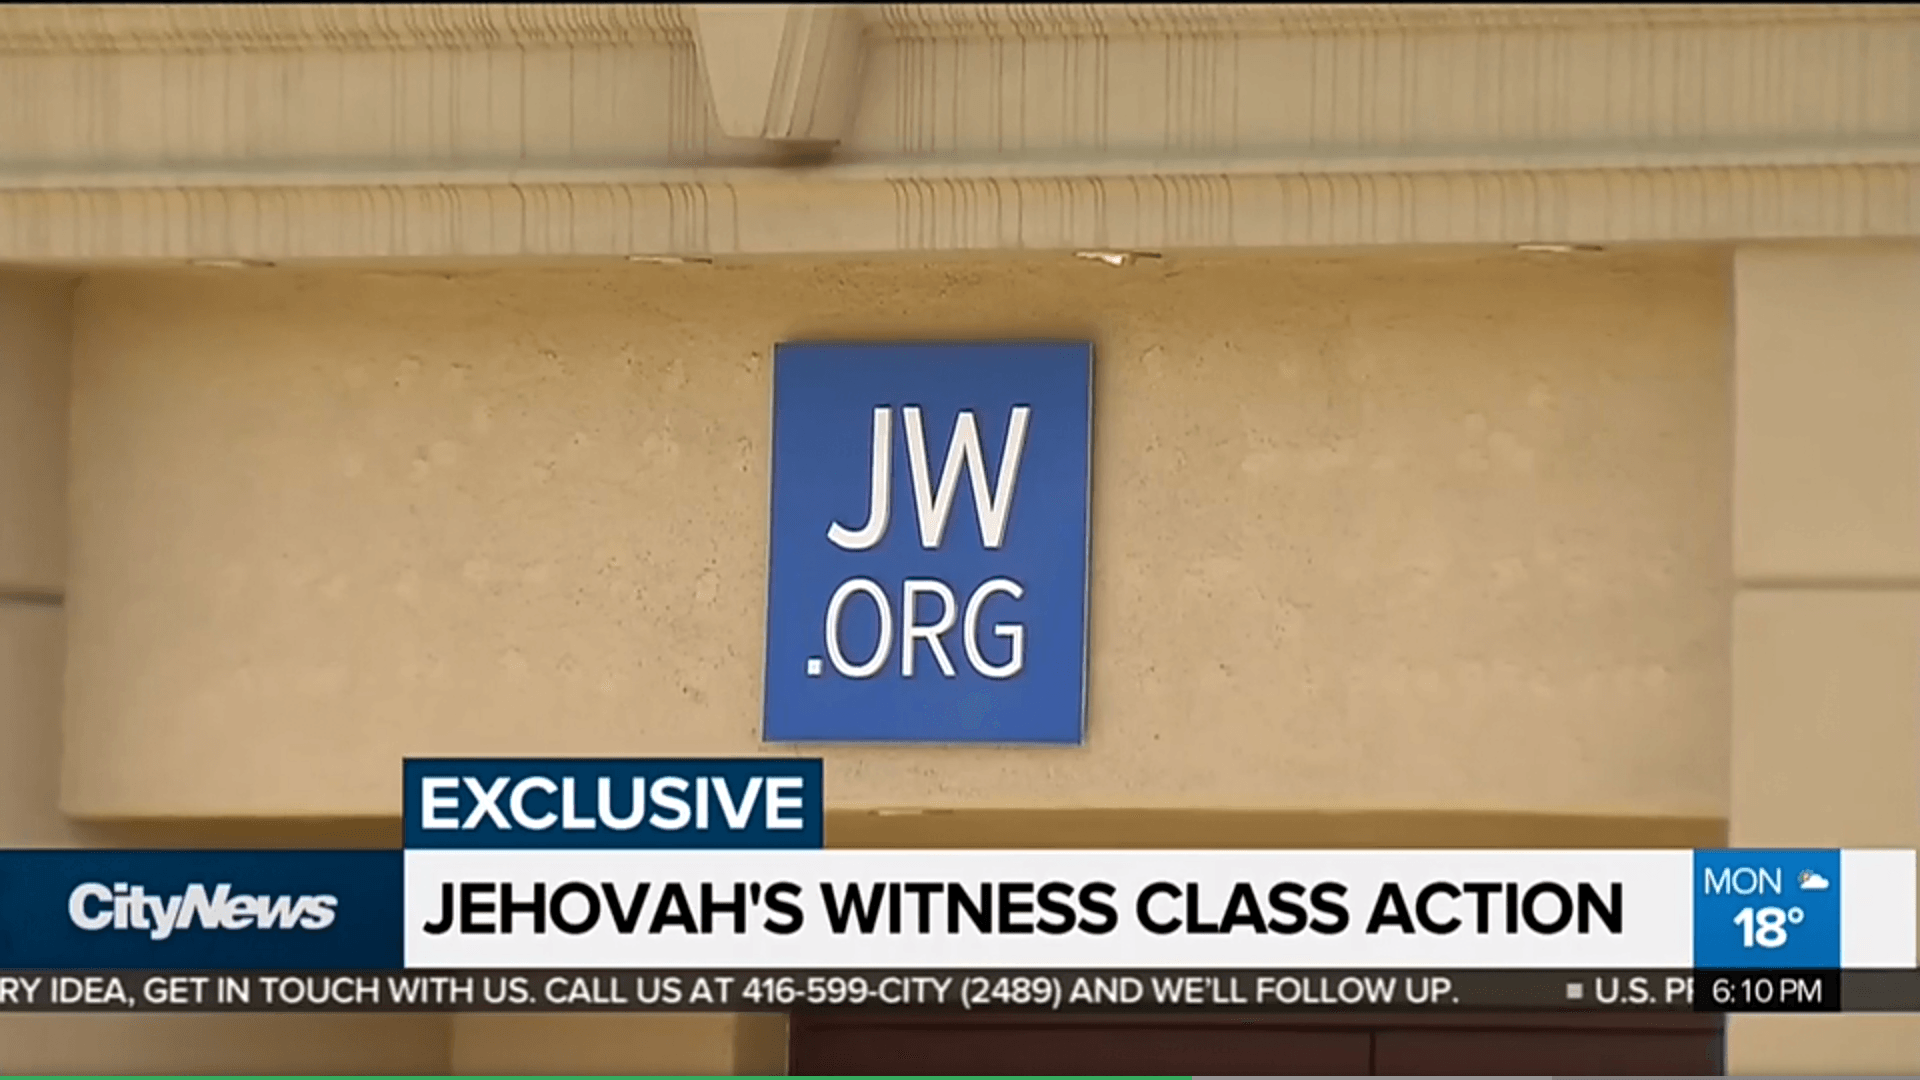 Jehovas Zeugen News Sammelklage 66 Millionen Kindesmissbrauch Pädophile Missbrauch Wahrheiten jetzt! 66 Millionen Kanadische Dollar-Sammelklage gegen Zeugen Jehovas wegen sexuellem Missbrauch